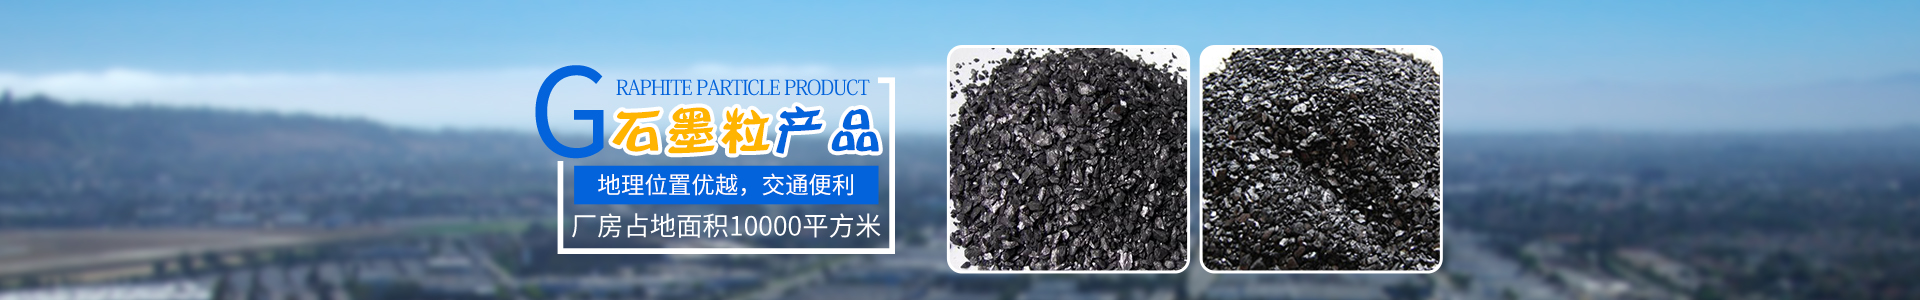 桂阳县太和高碳石墨厂_石墨粉生产|石墨粒生产|石墨球销售|石墨系列产品销售